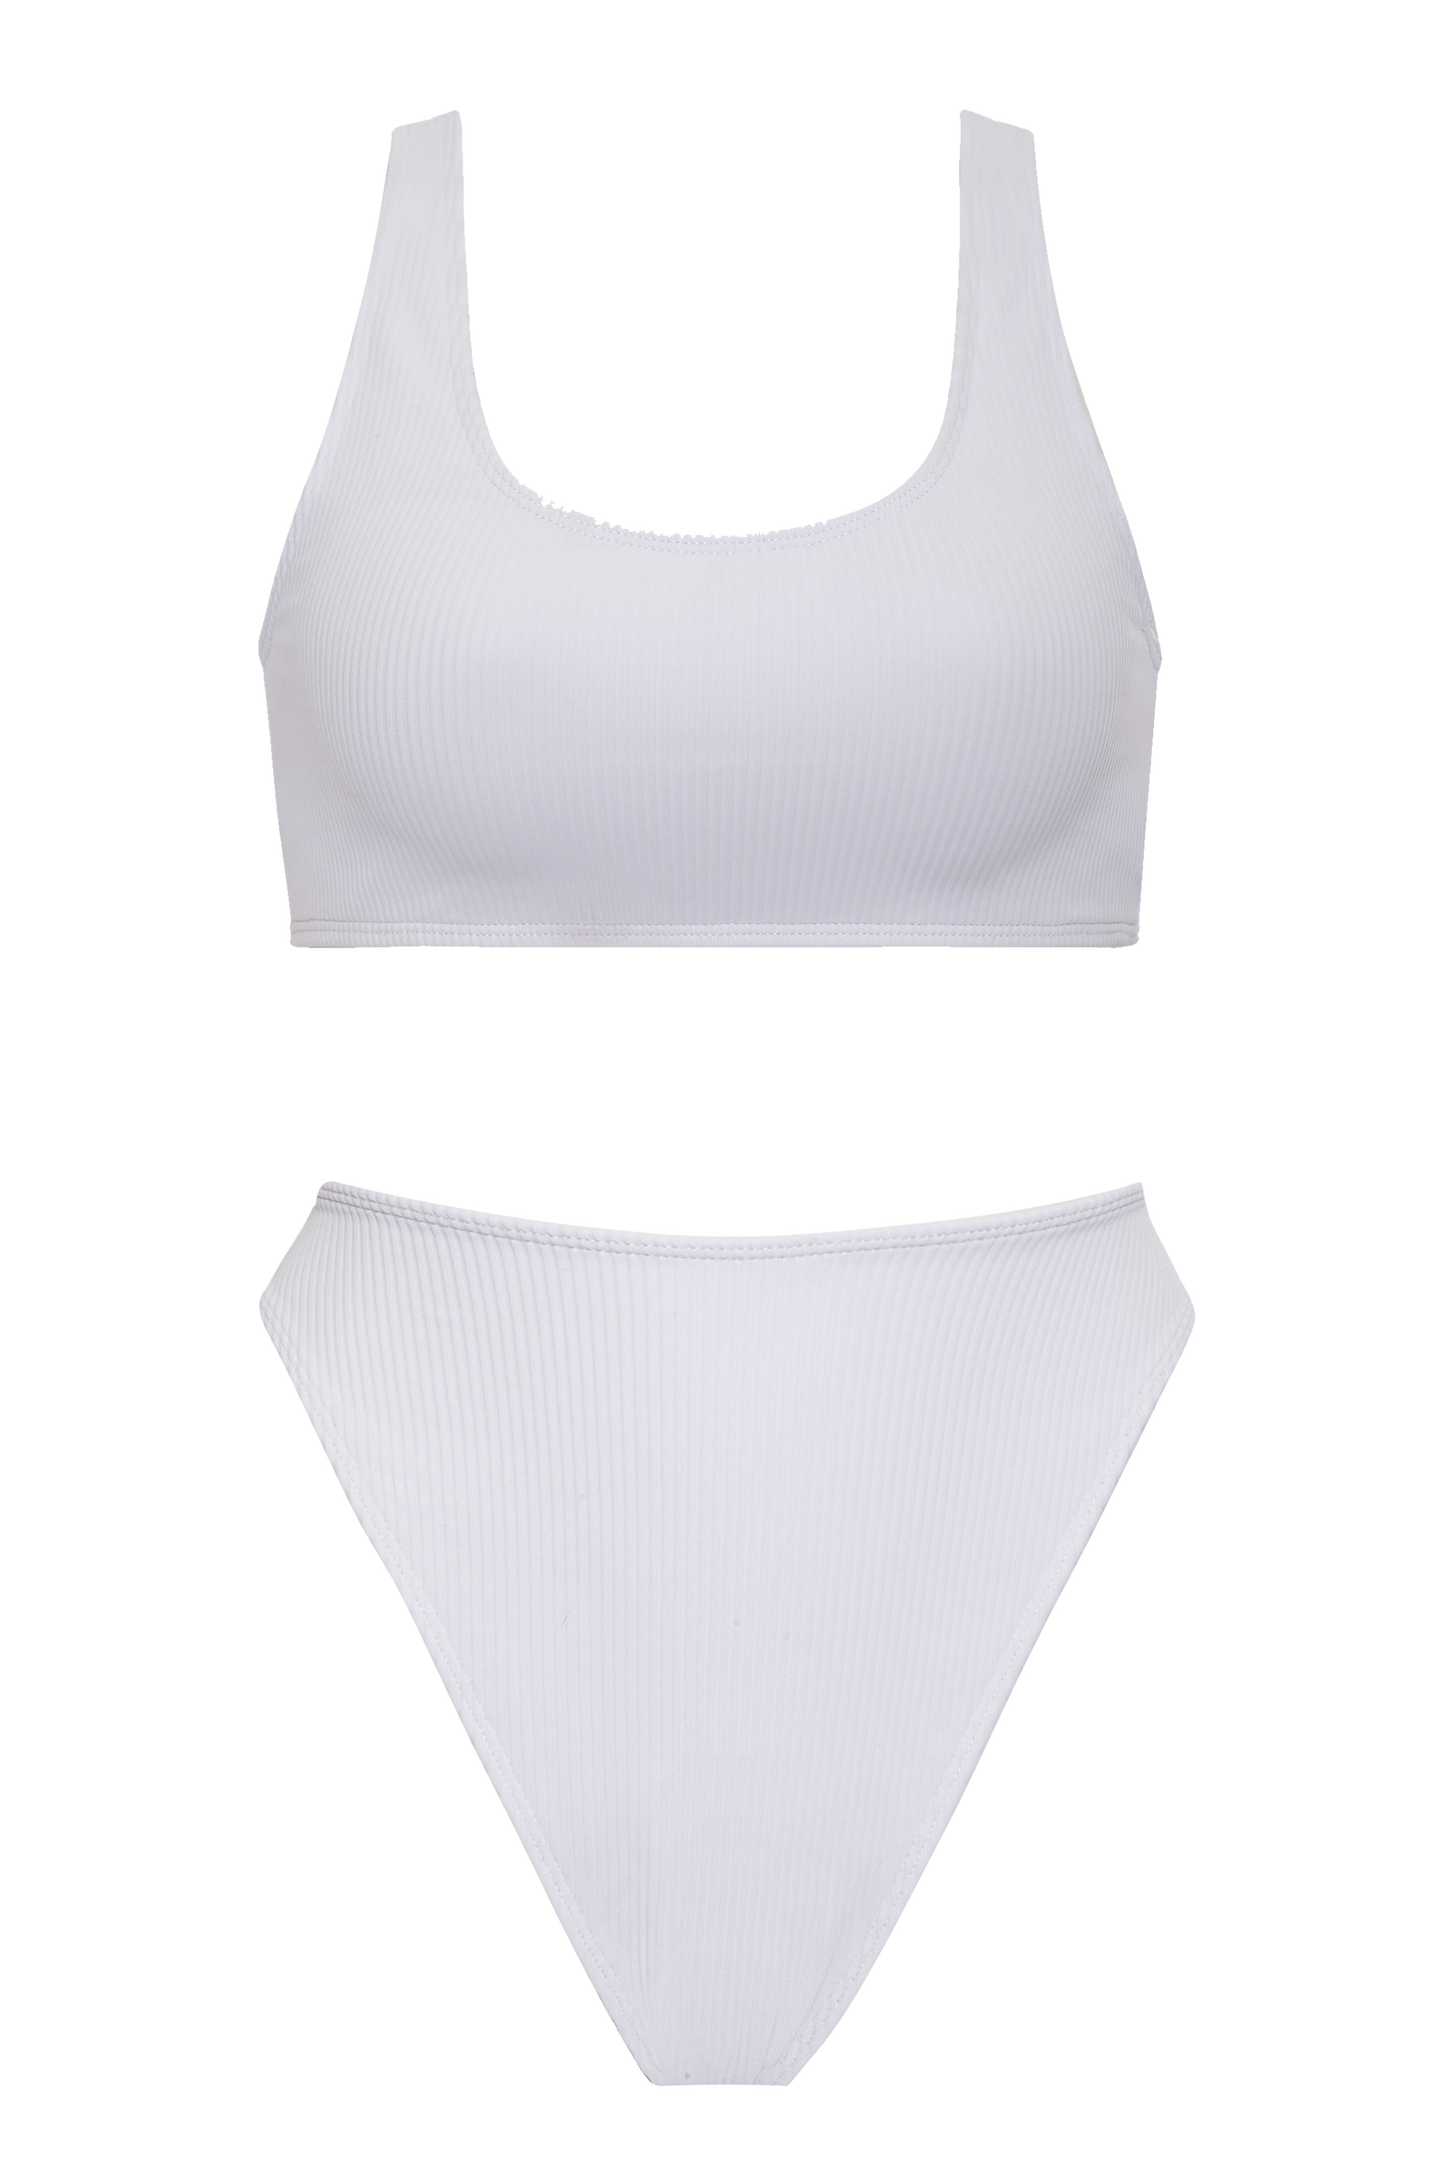 Bikini Sydney Bondi - Textura